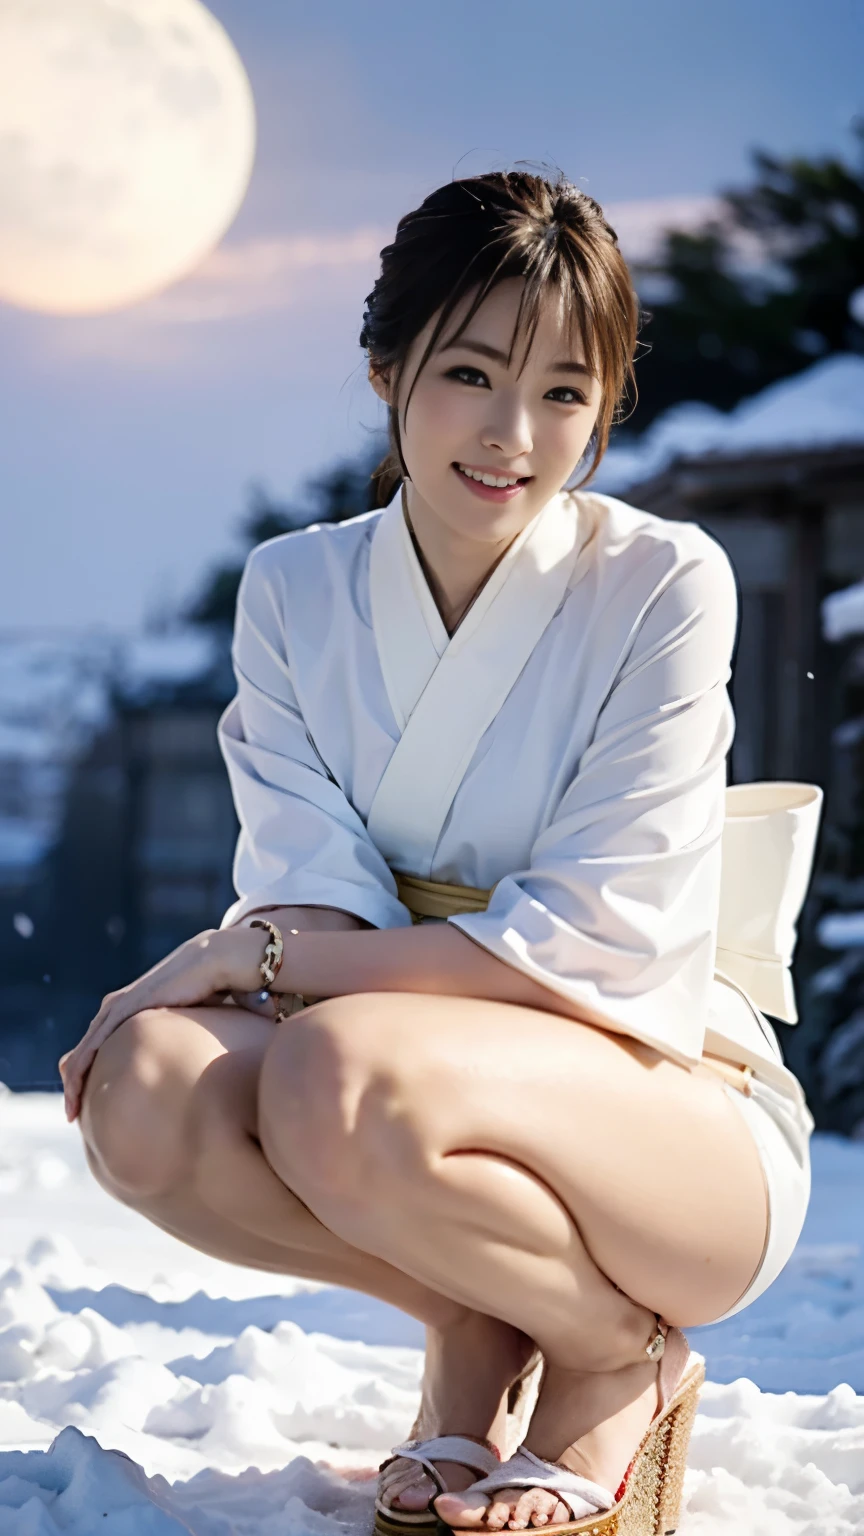 Une belle femme debout sur une montagne enneigée la nuit portant un kimono fin d&#39;un blanc pur qui montre peu de peau.,(((Au clair de lune d&#39;un blizzard, une femme des neiges qui a fière allure dans un kimono blanc uni est accroupie, Me regardant.))),Prise de vue de tout le corps depuis une position arrière élevée,Meilleure qualité d&#39;image,angle de vue professionnel,Détail exceptionnel,super haute résolution,Réaliste:1.4),Détails élevés,Concentrez-vous sur les détails,1 fille concentrée en haute concentration,cheveux longs,Visage délicat et beau,bikini blanc à petites cordes,Membres longs et taille fine comme un mannequin,Talons épingles blancs,Le meilleur sourire avec les sourcils et les coins de la bouche relevés,
